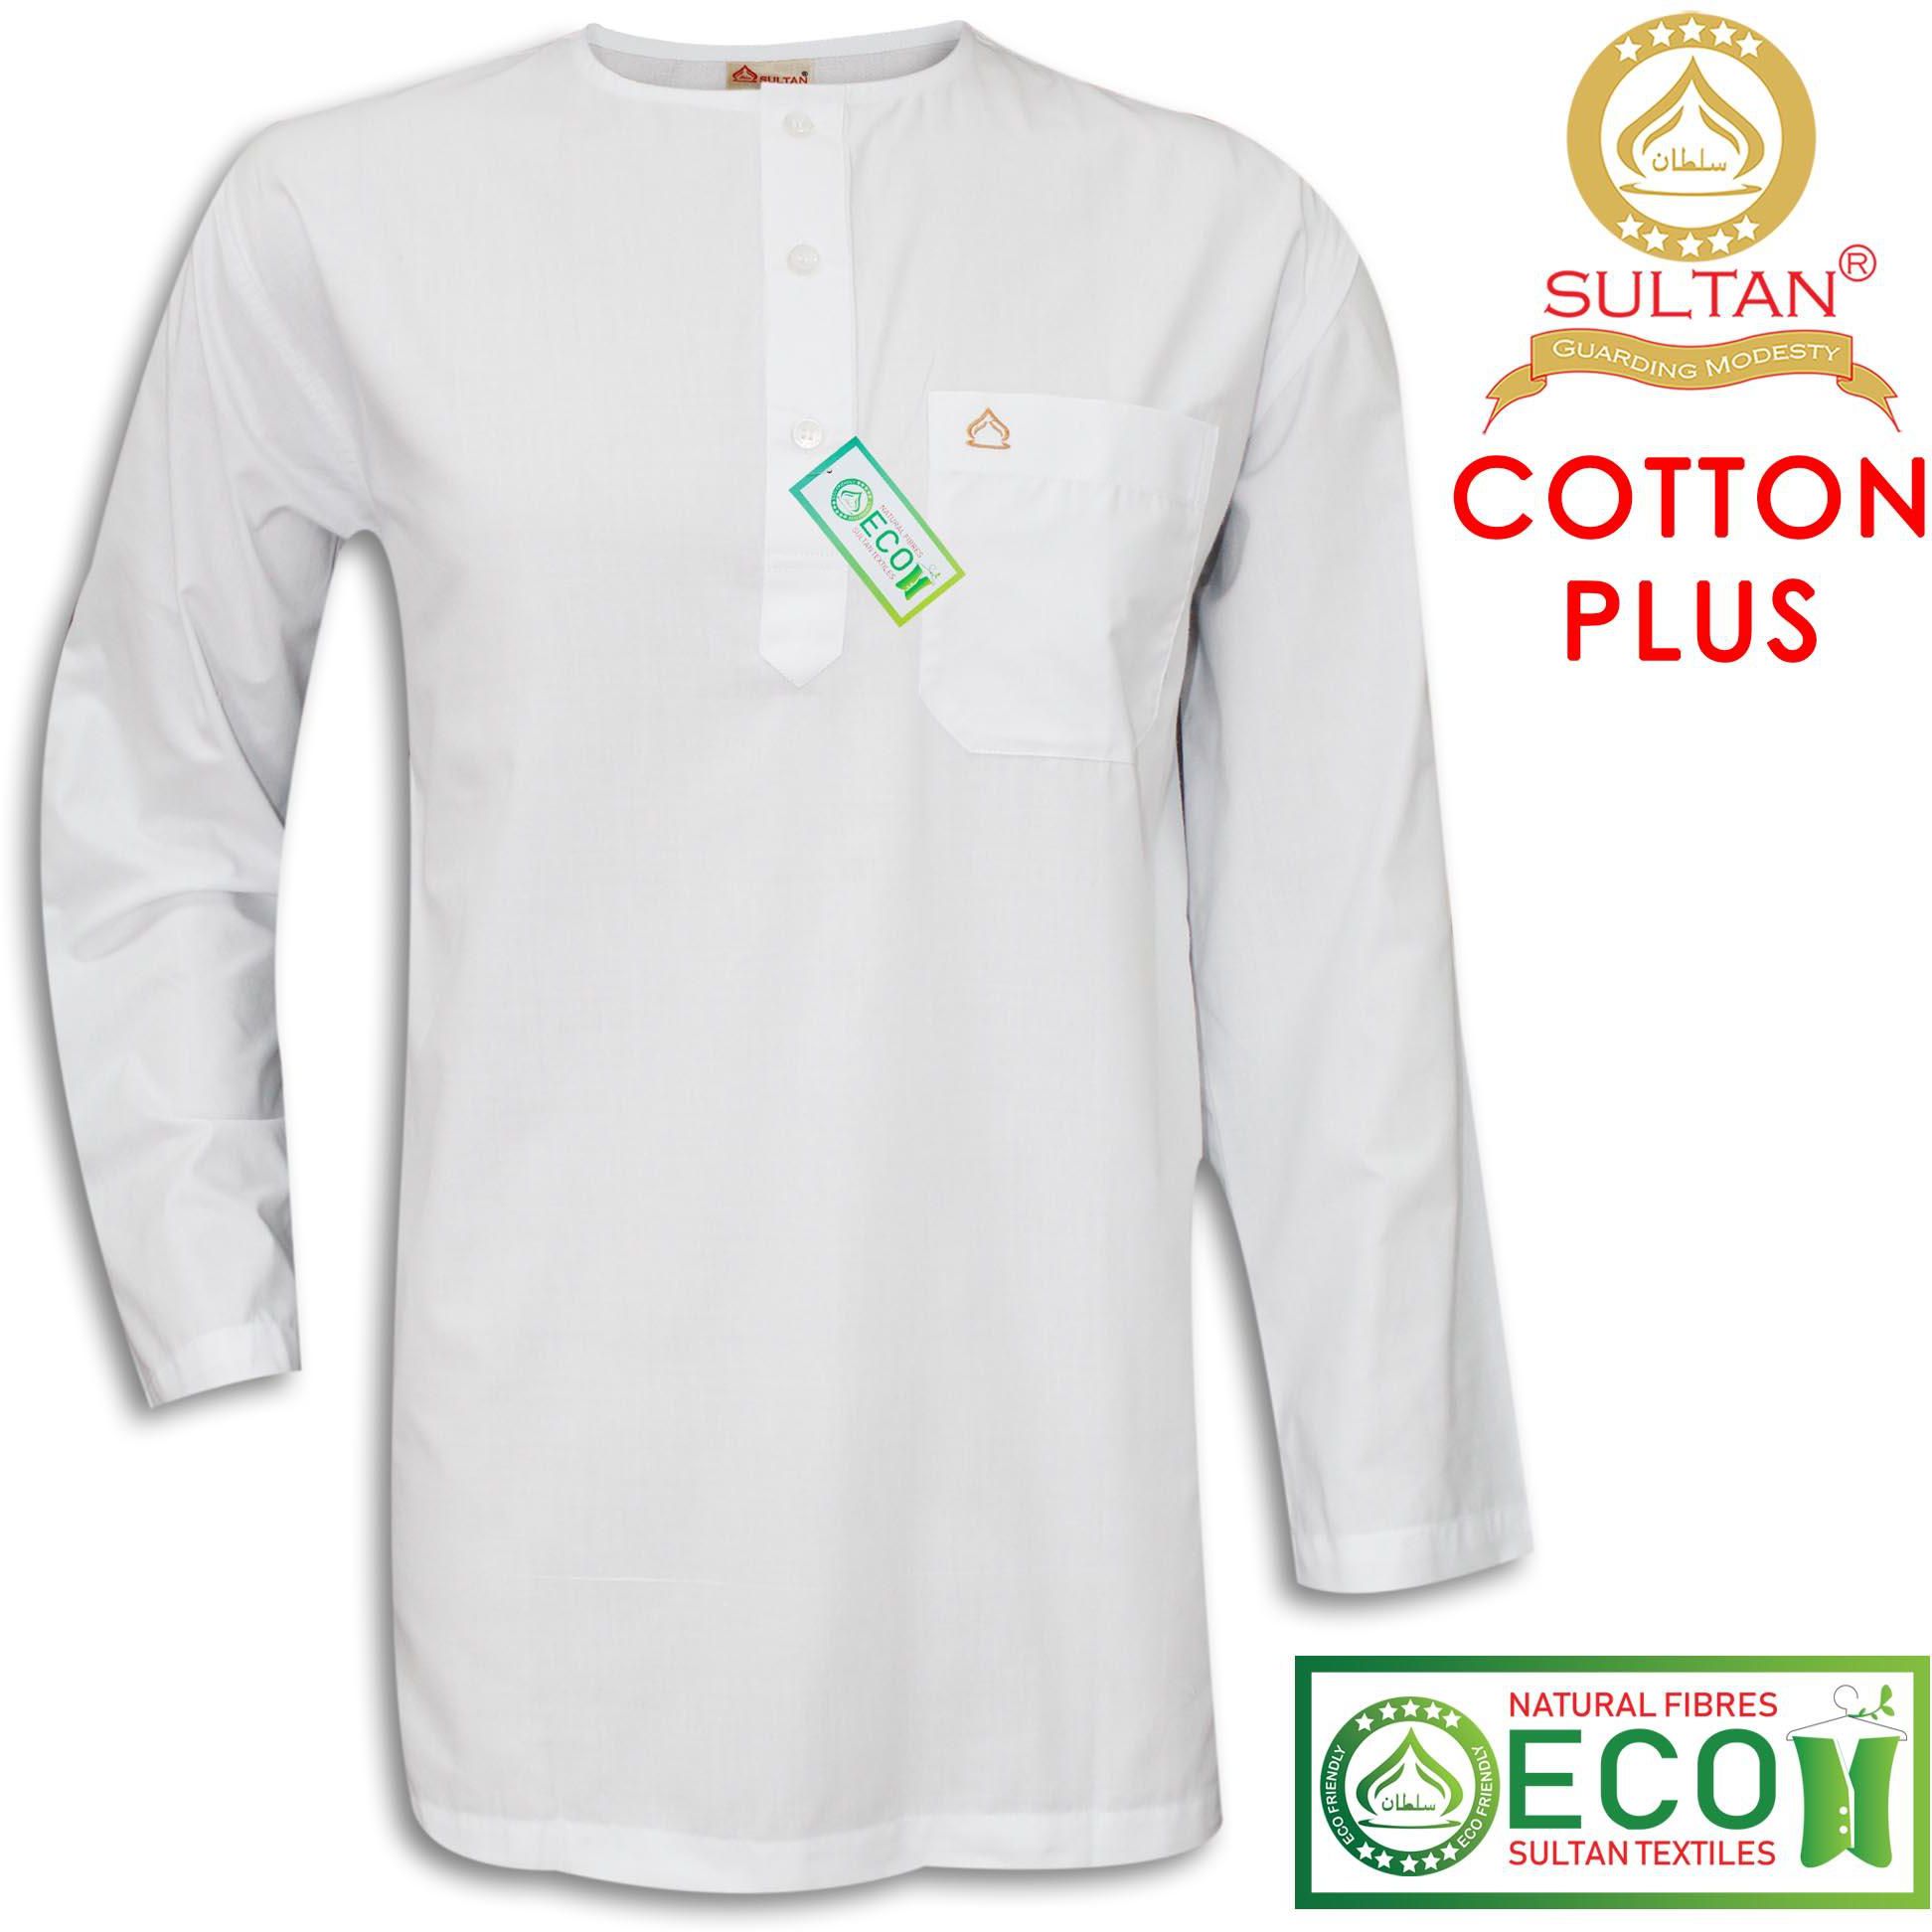 Sultan Kurta - Cotton Plus - Round Neck Full Sleeves - 5 Sizes (White)